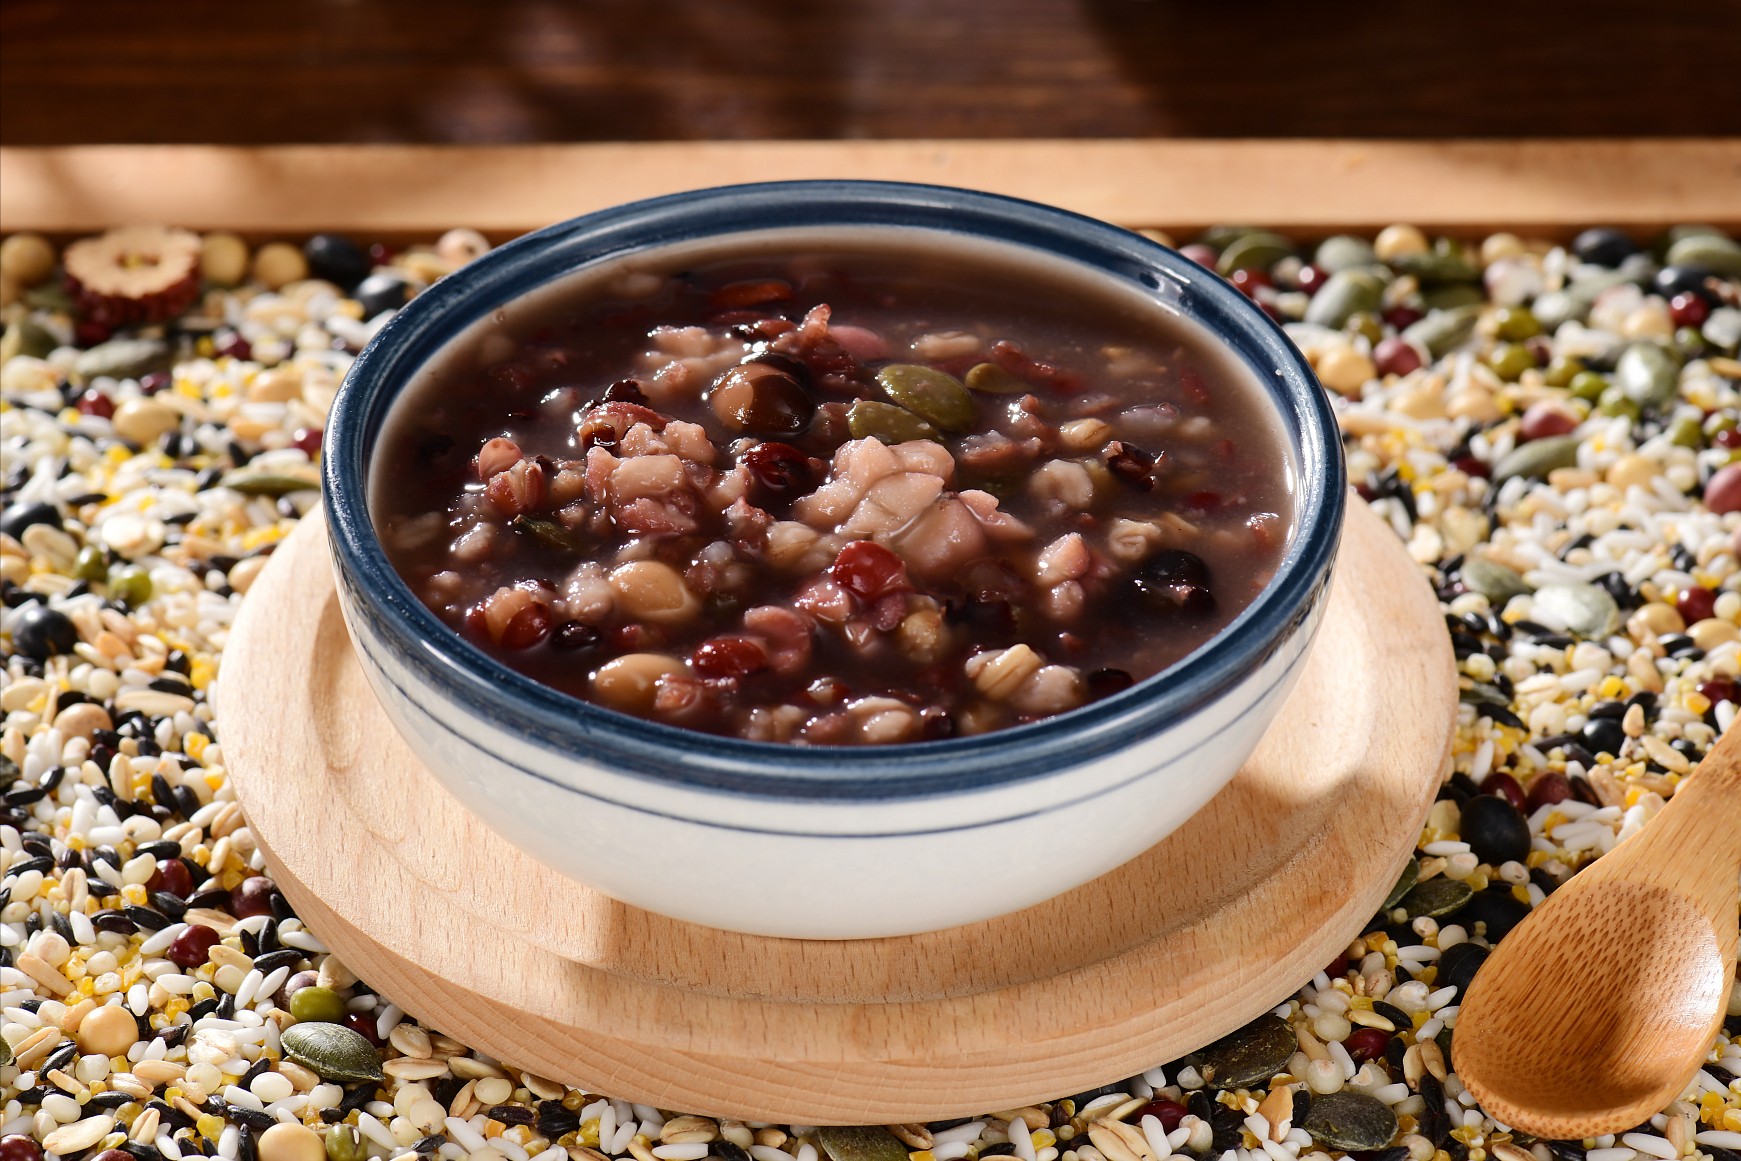 食材组成:大米,红豆,薏仁,南瓜籽,黑豆,小米红豆薏仁粥做法:将比较硬